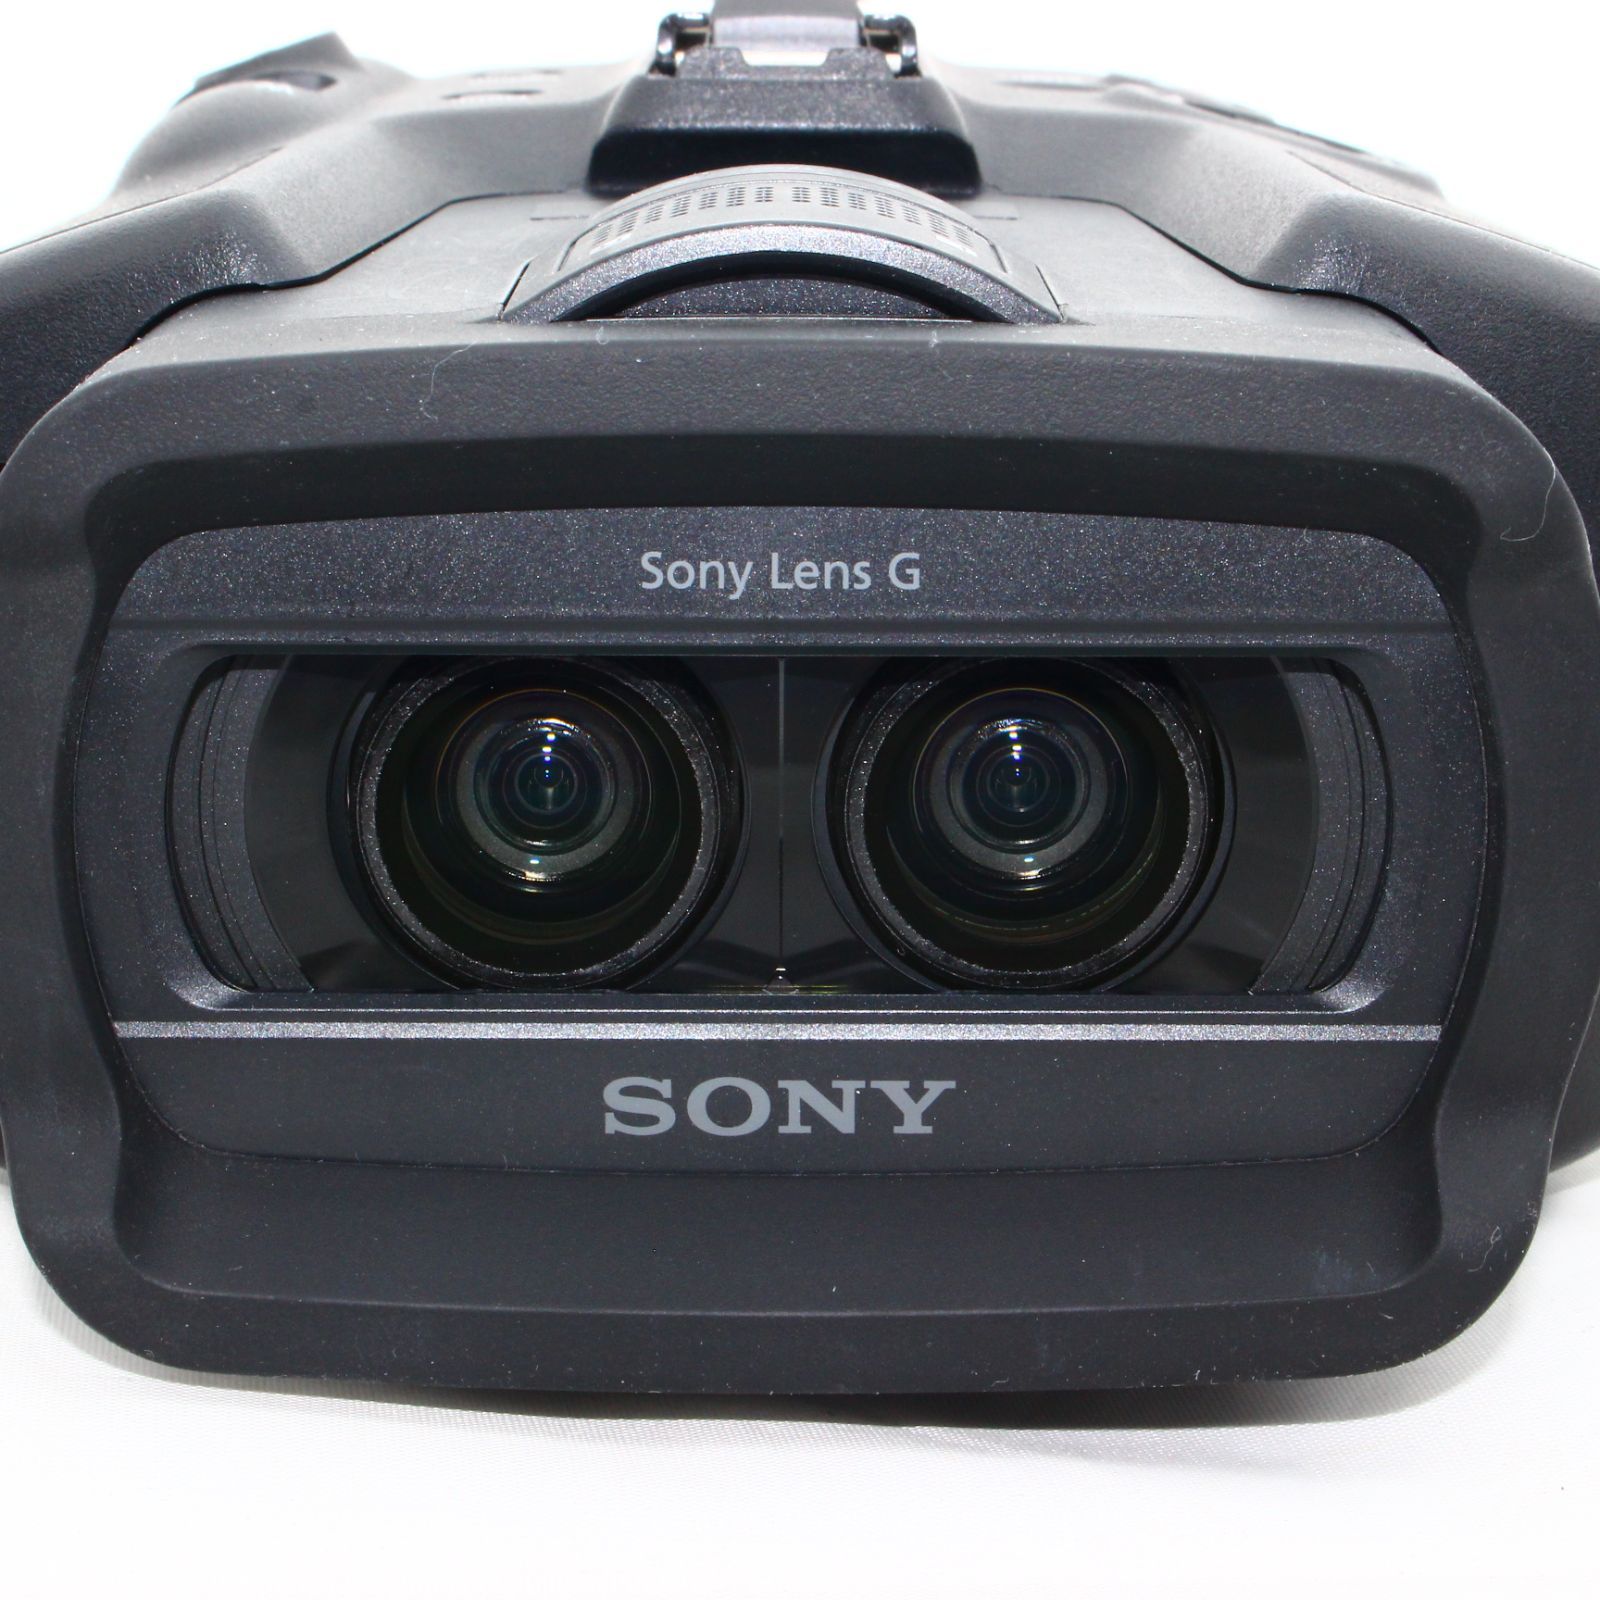 ソニー SONY 双眼鏡 デジタル録画双眼鏡 DEV-3 ポロプリズム式 光学10倍 DEV-3 MT Camera【中古保証1ヶ月】  メルカリ